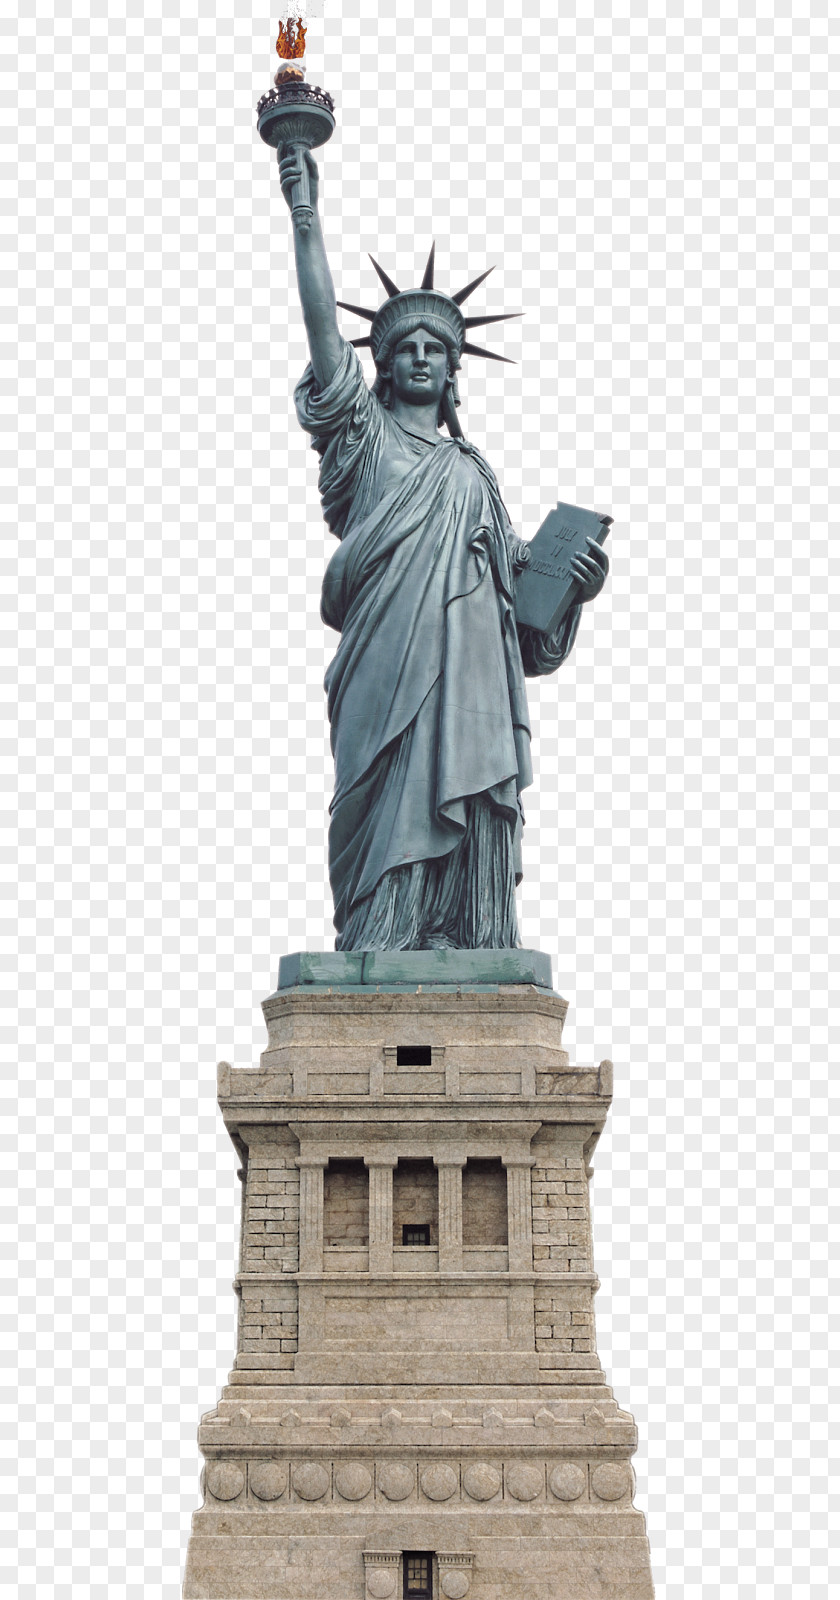 Paris London Statue Of Liberty Monument Sculpture Image PNG